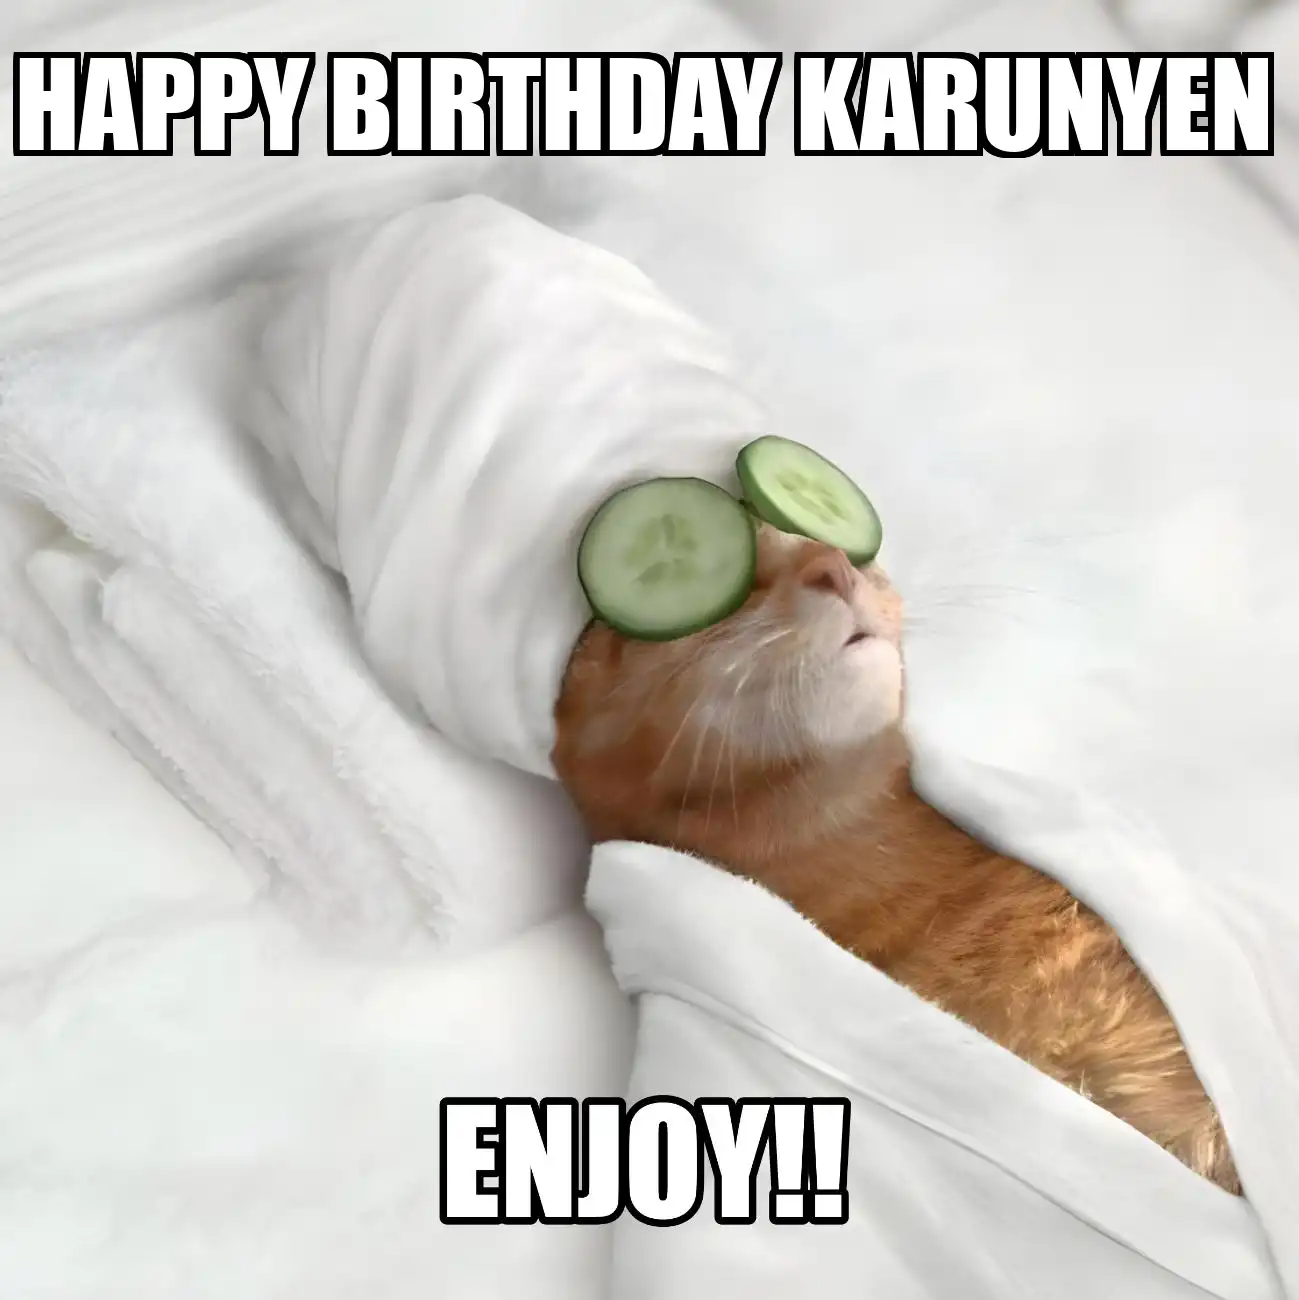 Happy Birthday Karunyen Enjoy Cat Meme